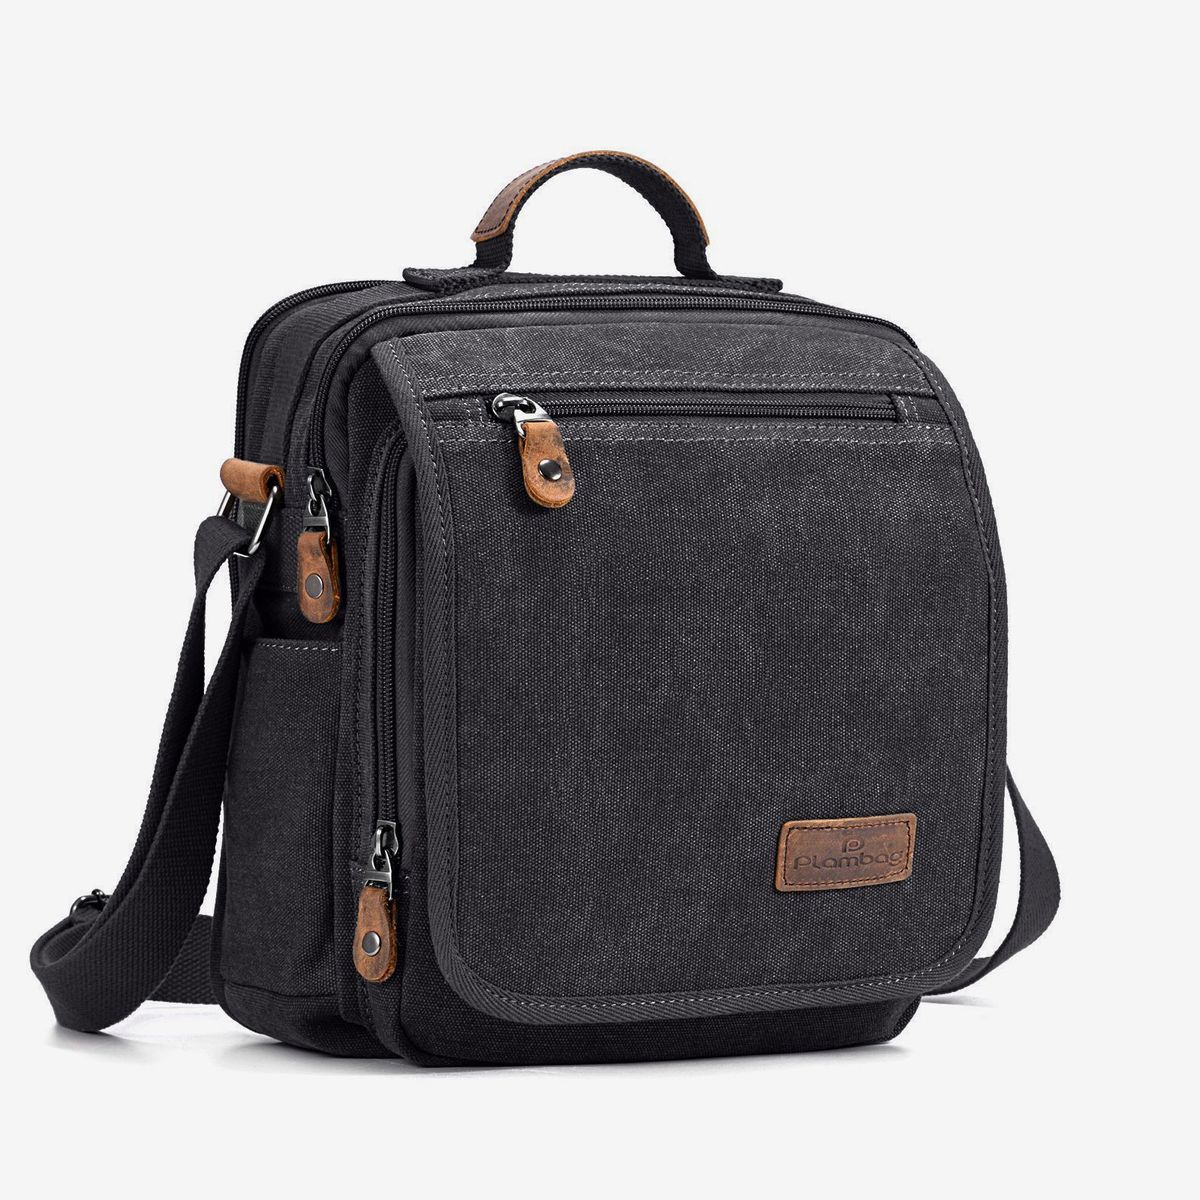 Brown Shoulder Bag For School | vlr.eng.br